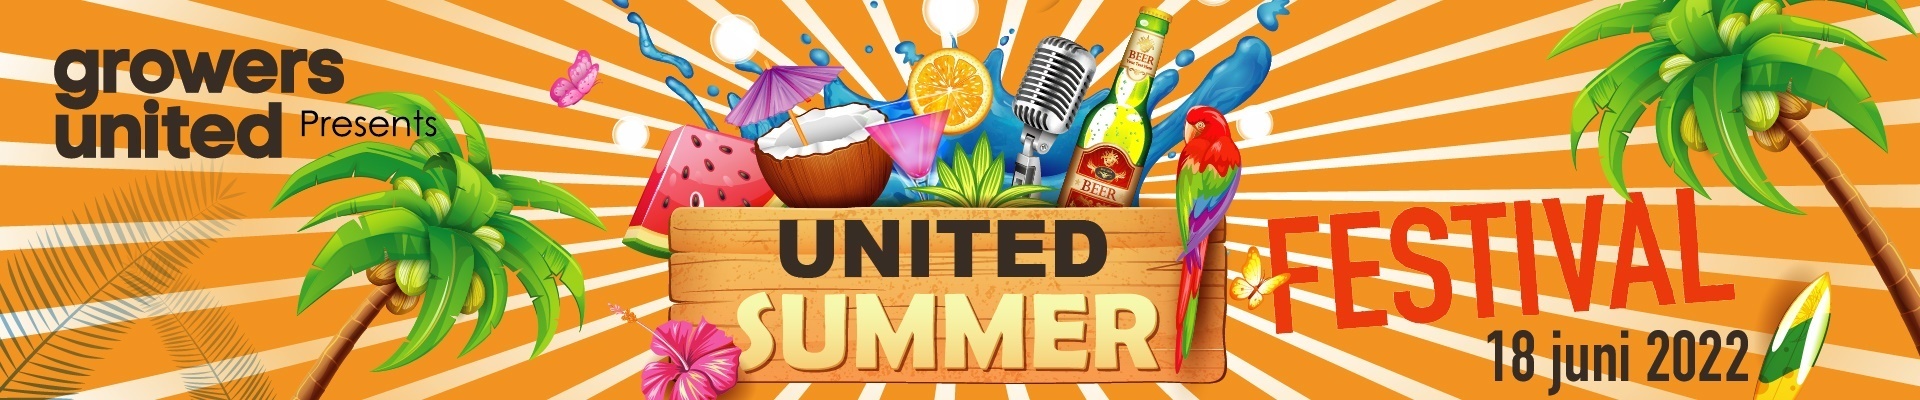 United Summer Festival